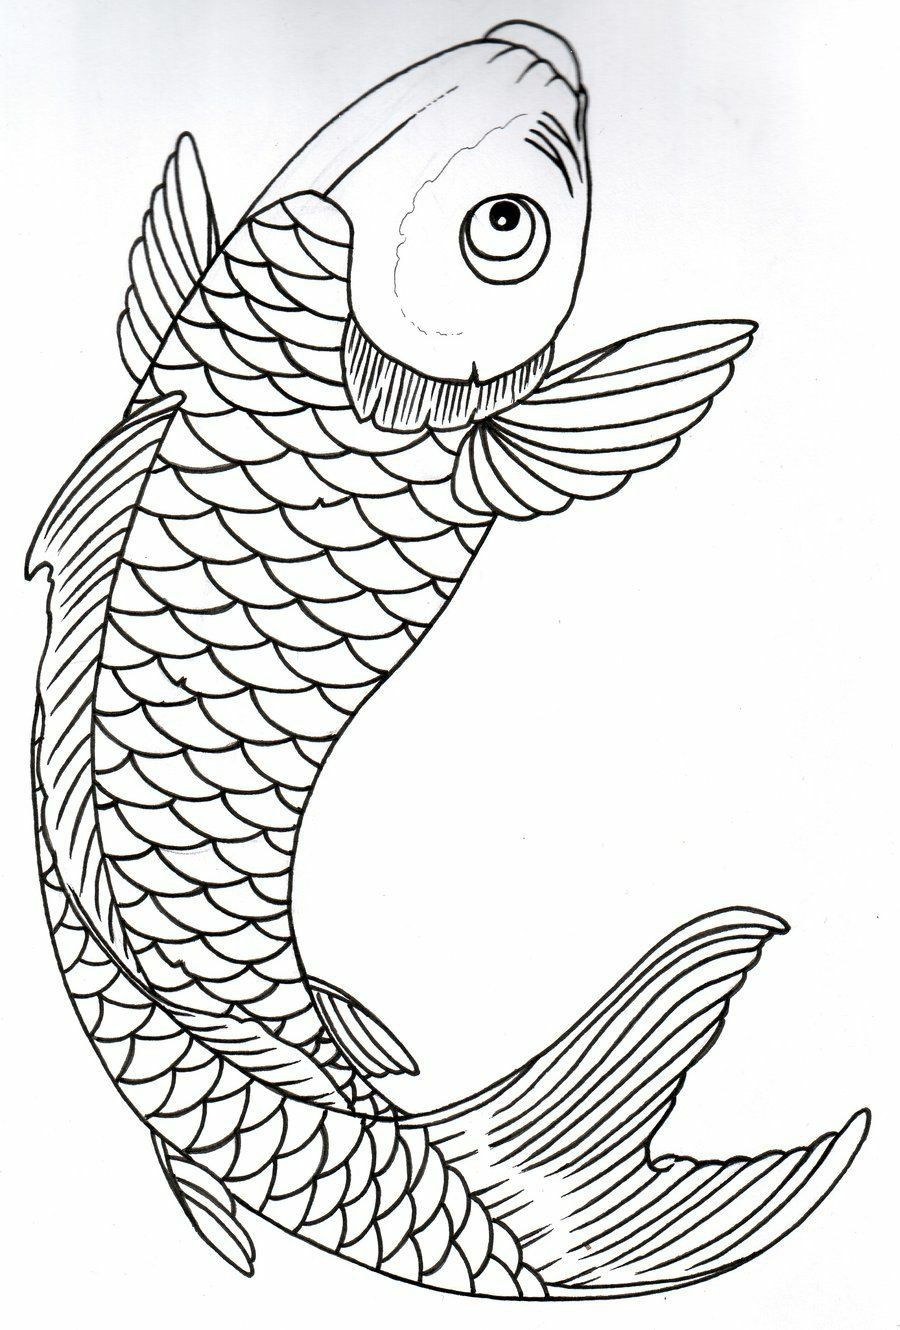 Hình vẽ cá chép trắng đen